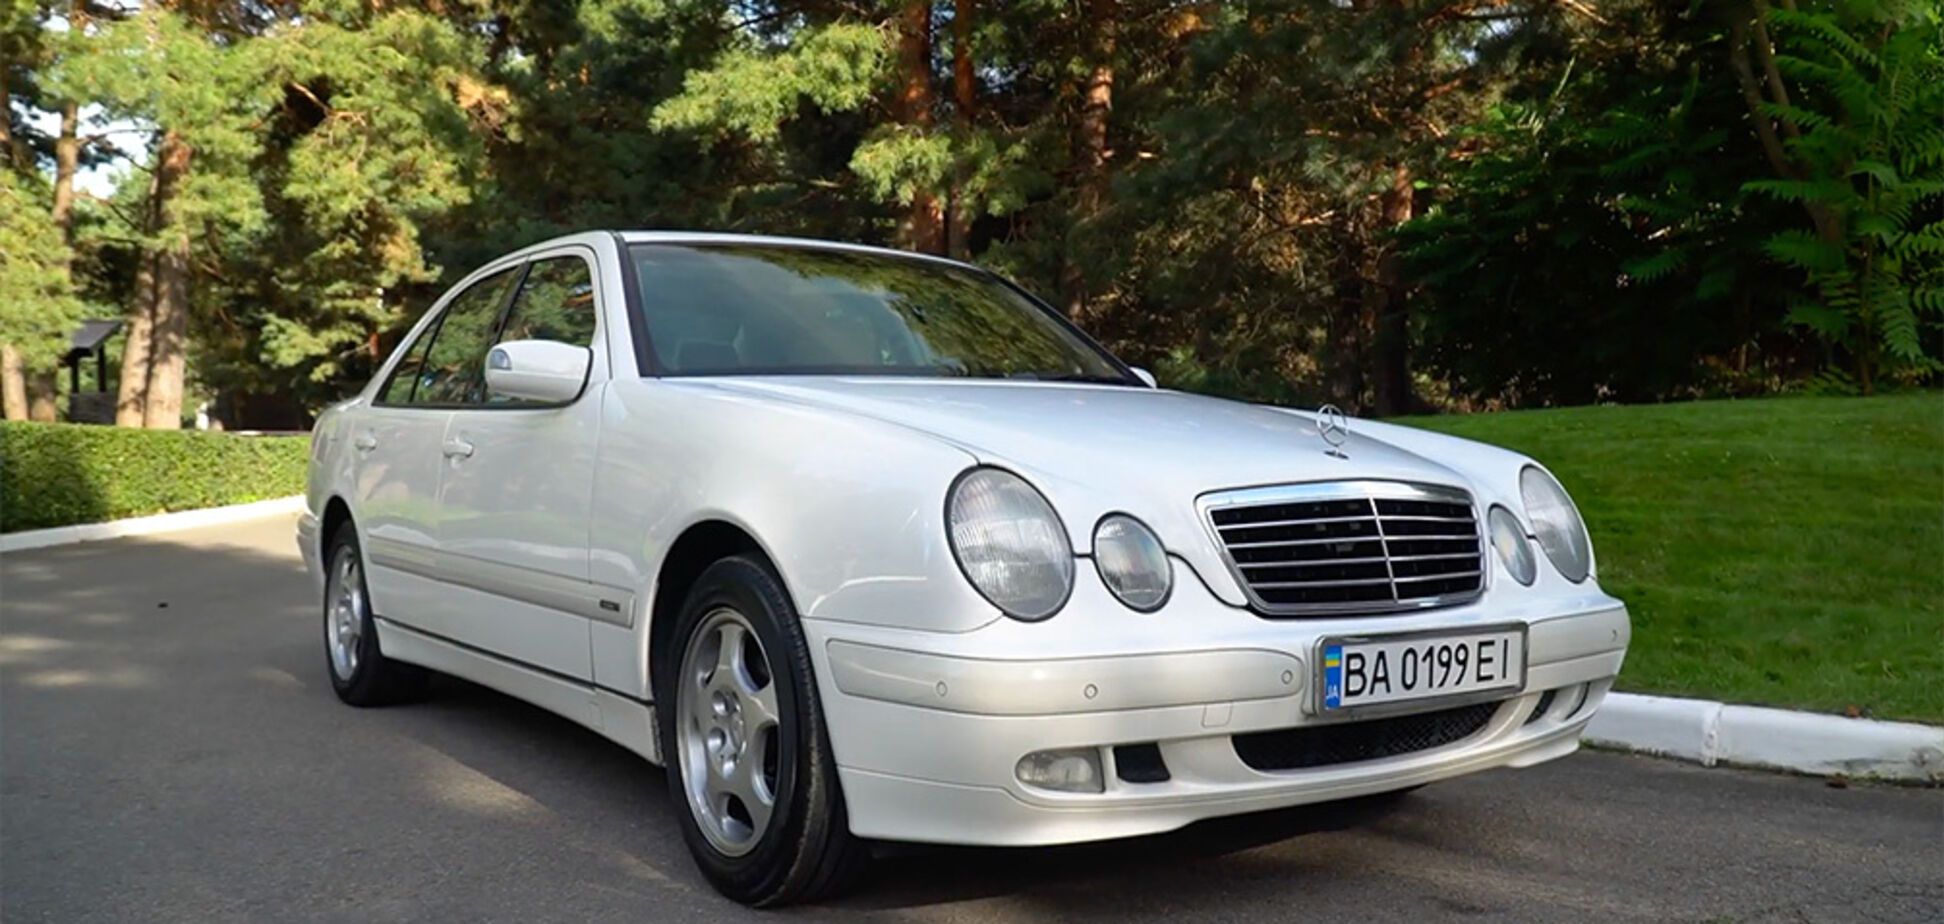 Украинец пригнал из Японии идеальный Mercedes по цене 'битка' из США